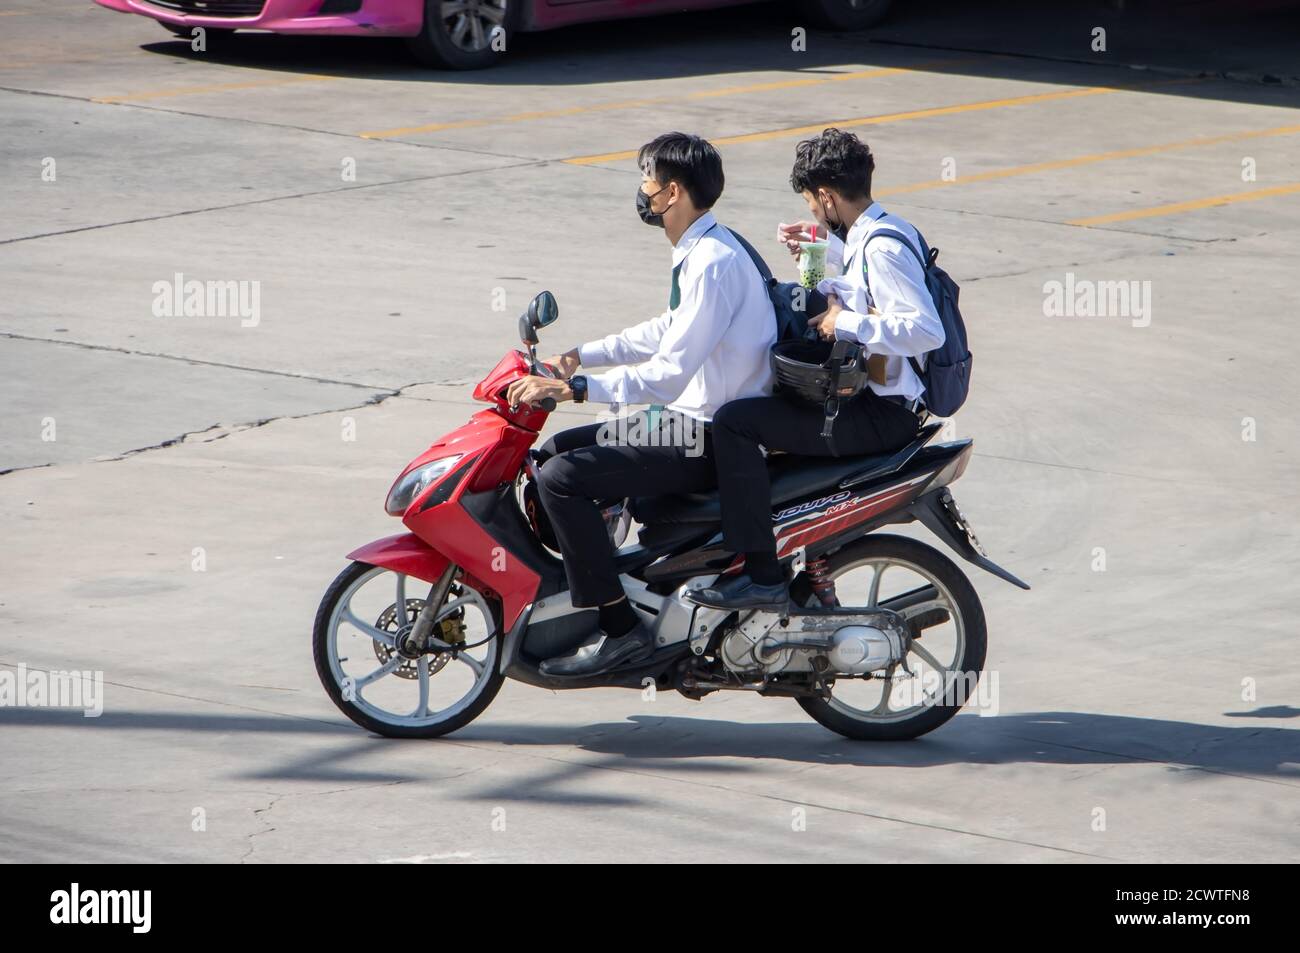 SAMUT PRAKAN, THAÏLANDE, JUL 29 2020, UN deux garçons en chemise blanche se  rassemblent sur une moto Photo Stock - Alamy